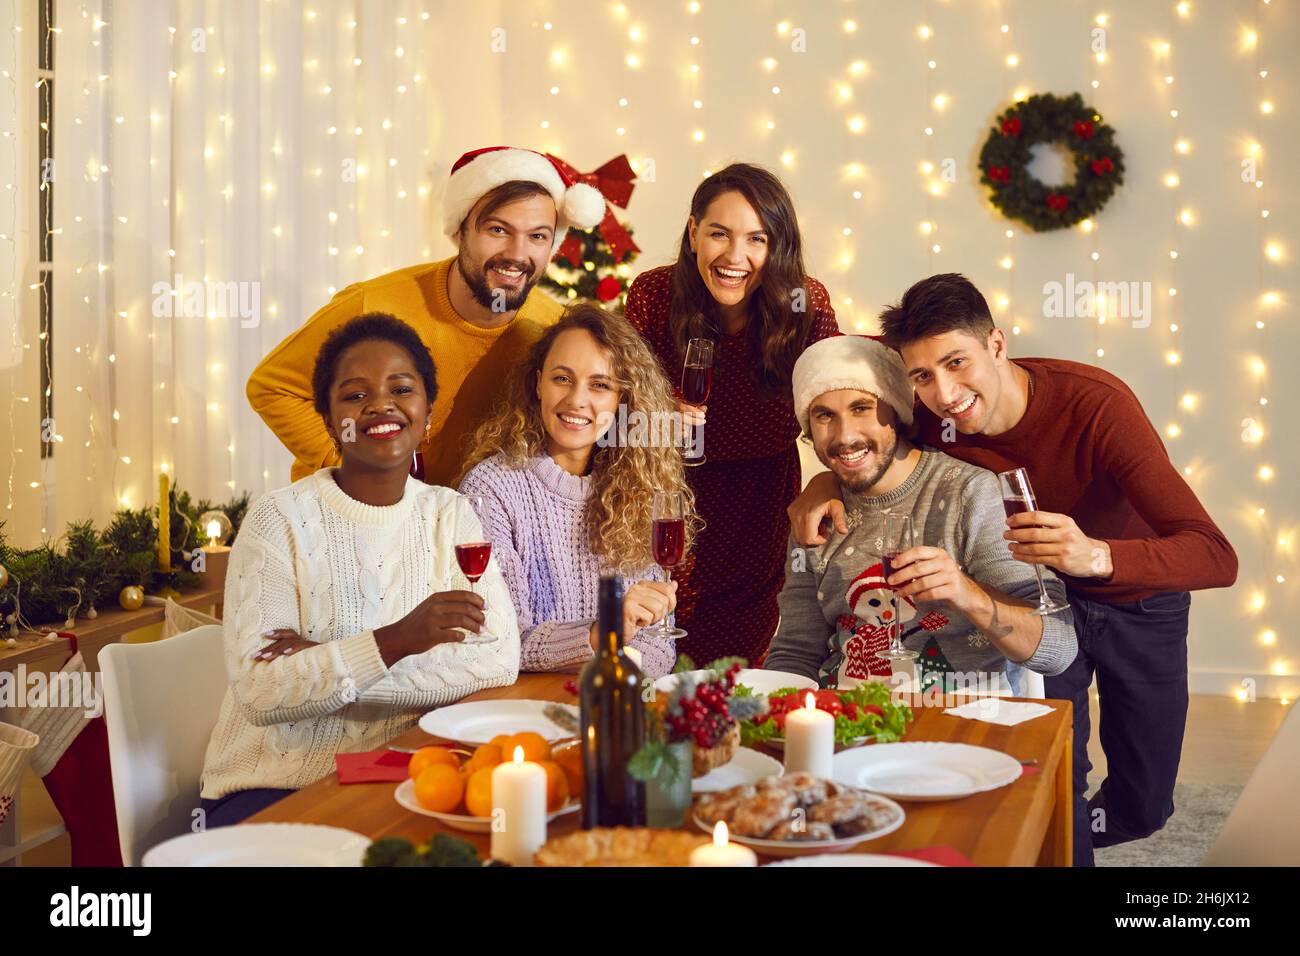 Gruppenportrait von glücklichen, vielfältigen Freunden an einem festlichen Tisch auf der Weihnachtsfeier zu Hause Stockfoto